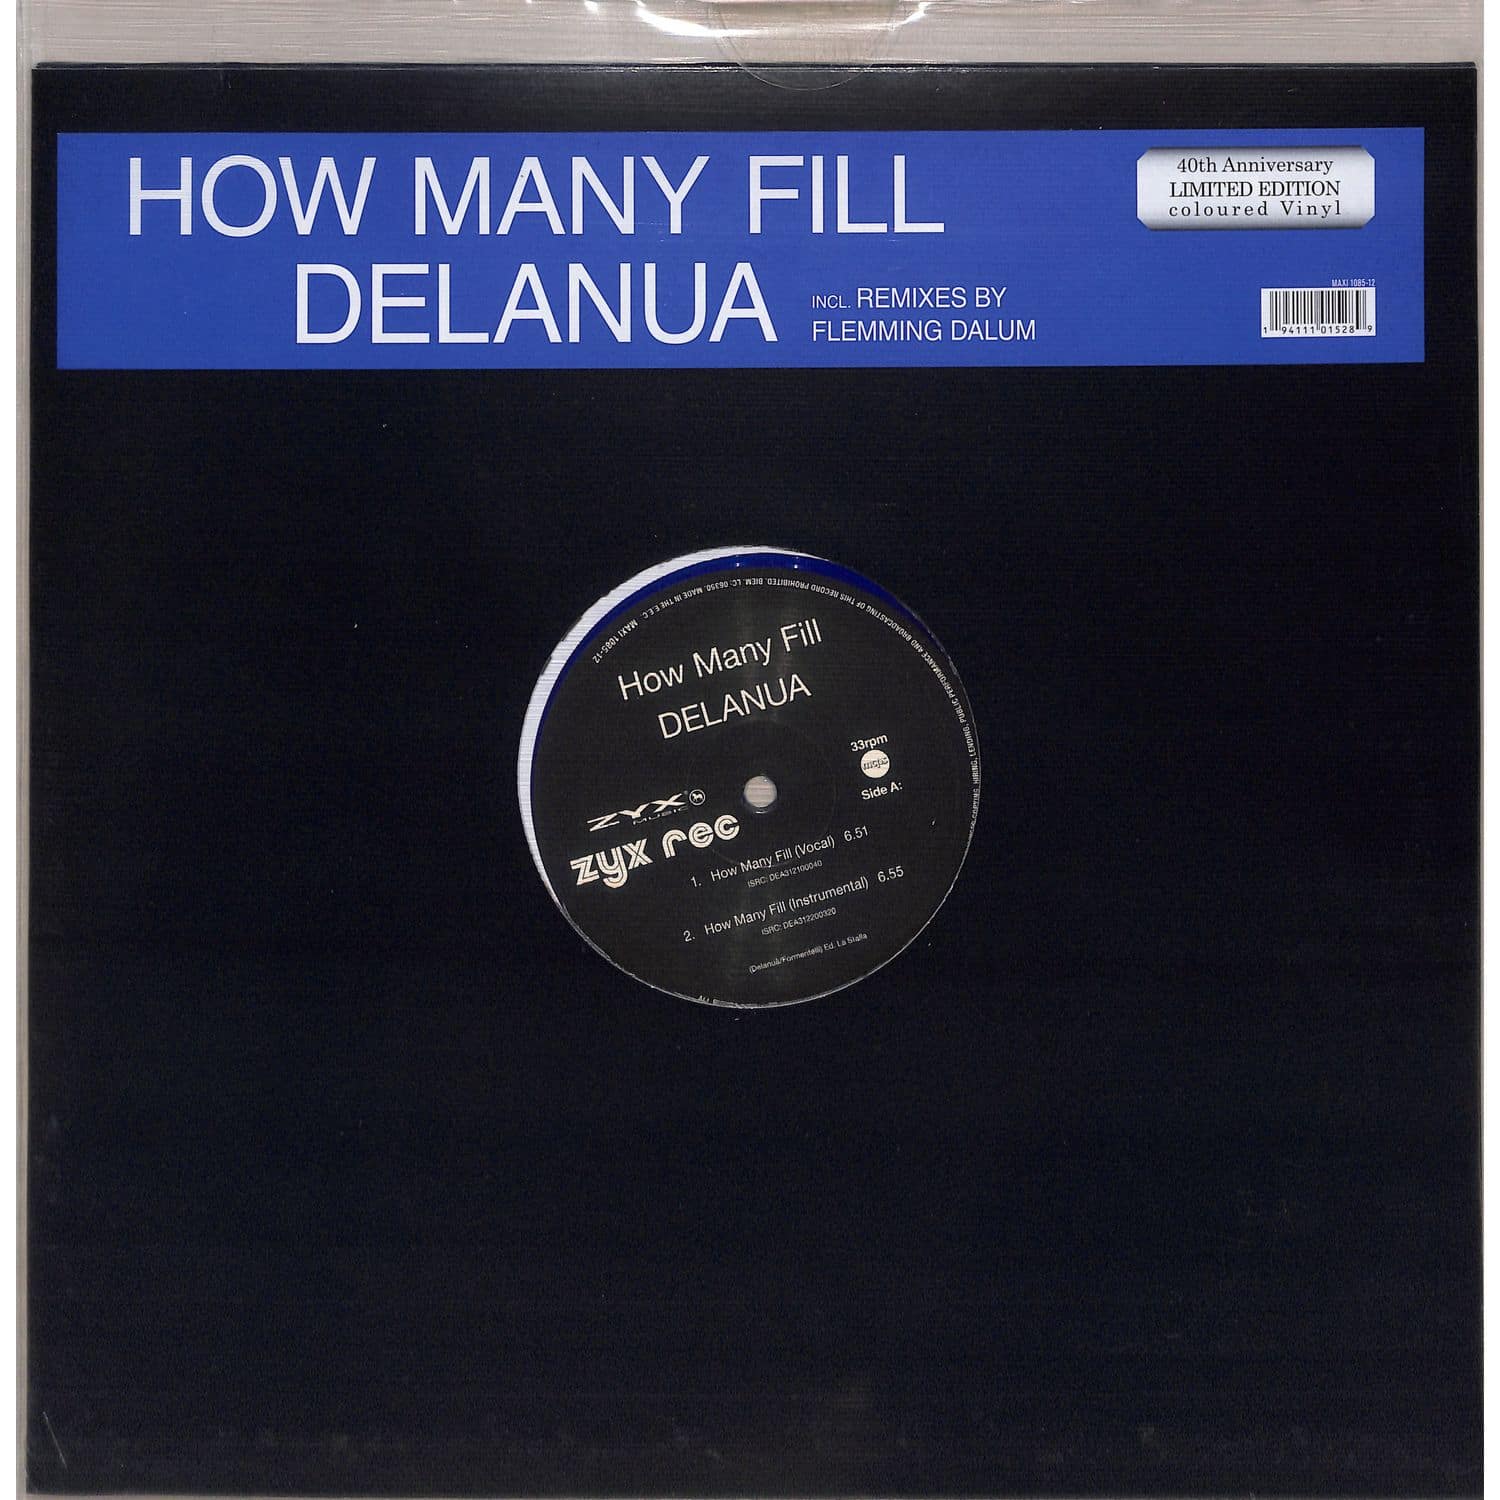 Delanua - HOW MANY FILL 